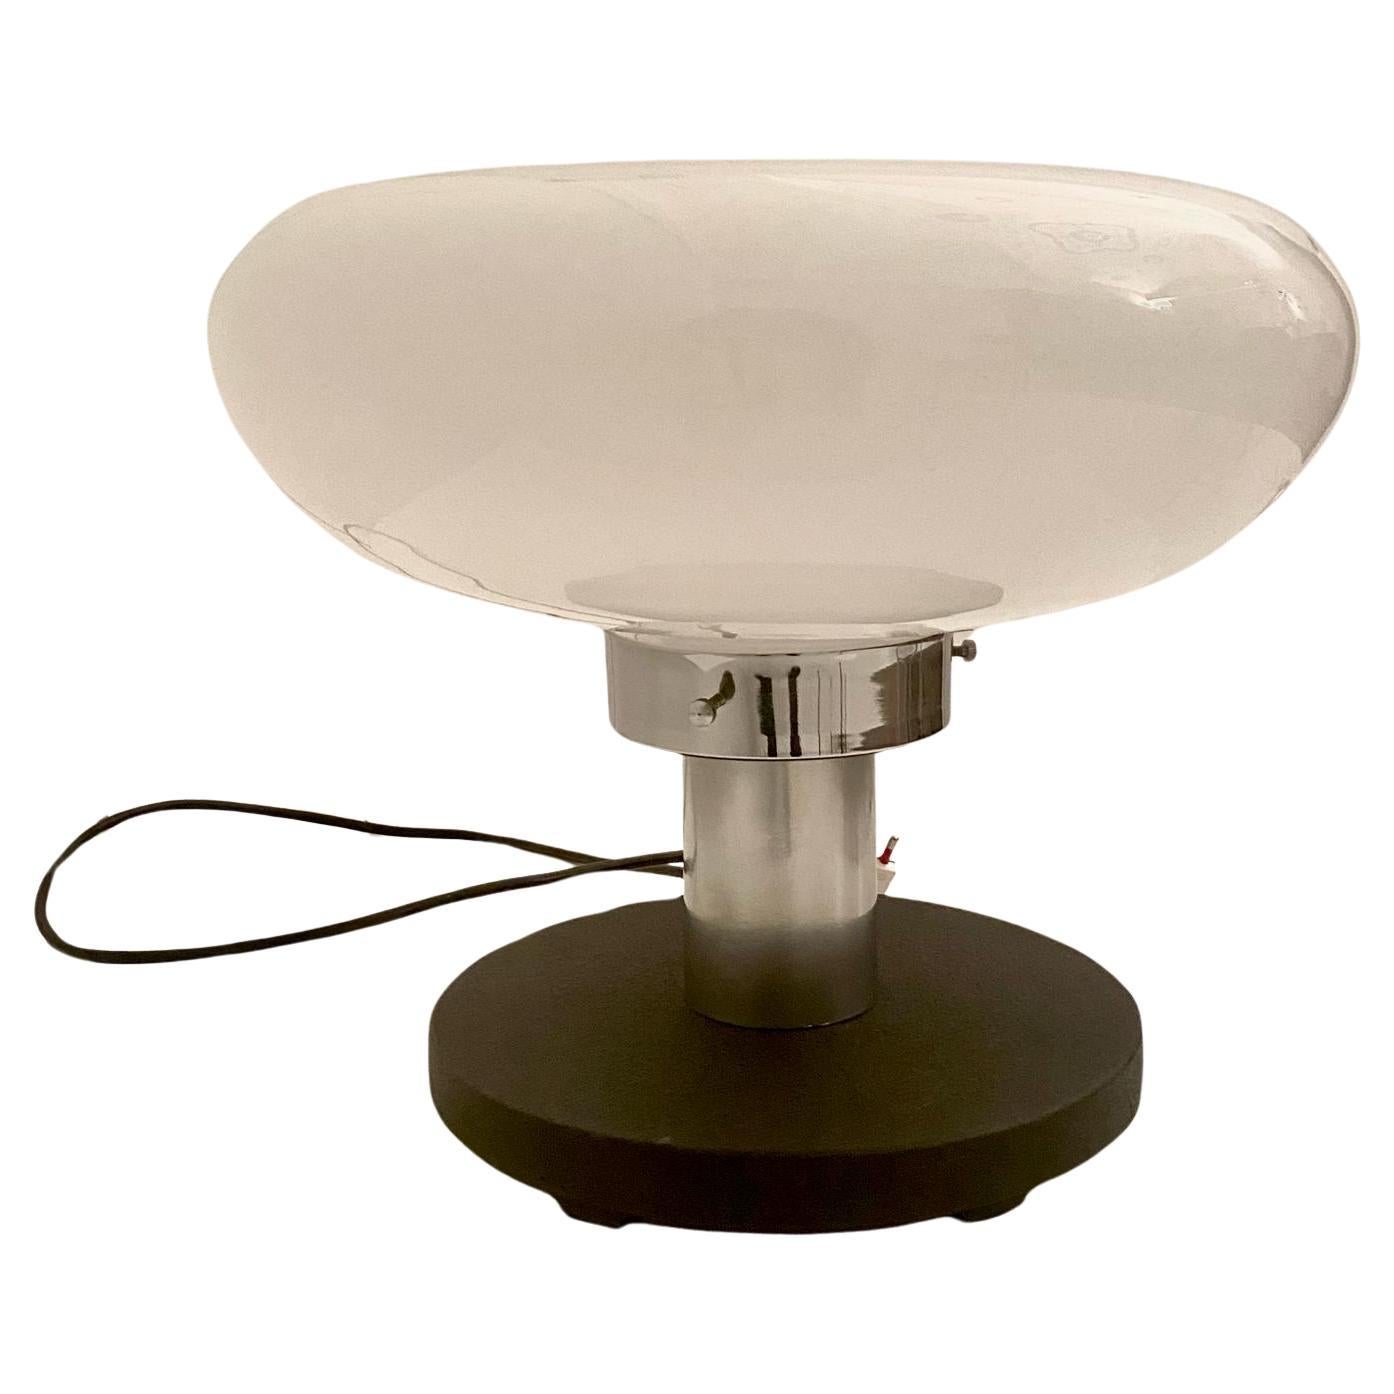 Grande lampe de table Murano de style Artemide, / Mangiarotti fabriquée en Italie dans les années 1970.

Abat-jour en verre de Murano transparent et blanc posé sur une base ronde en acier. Aiguilleur spécial constitué d'un levier en métal chromé.